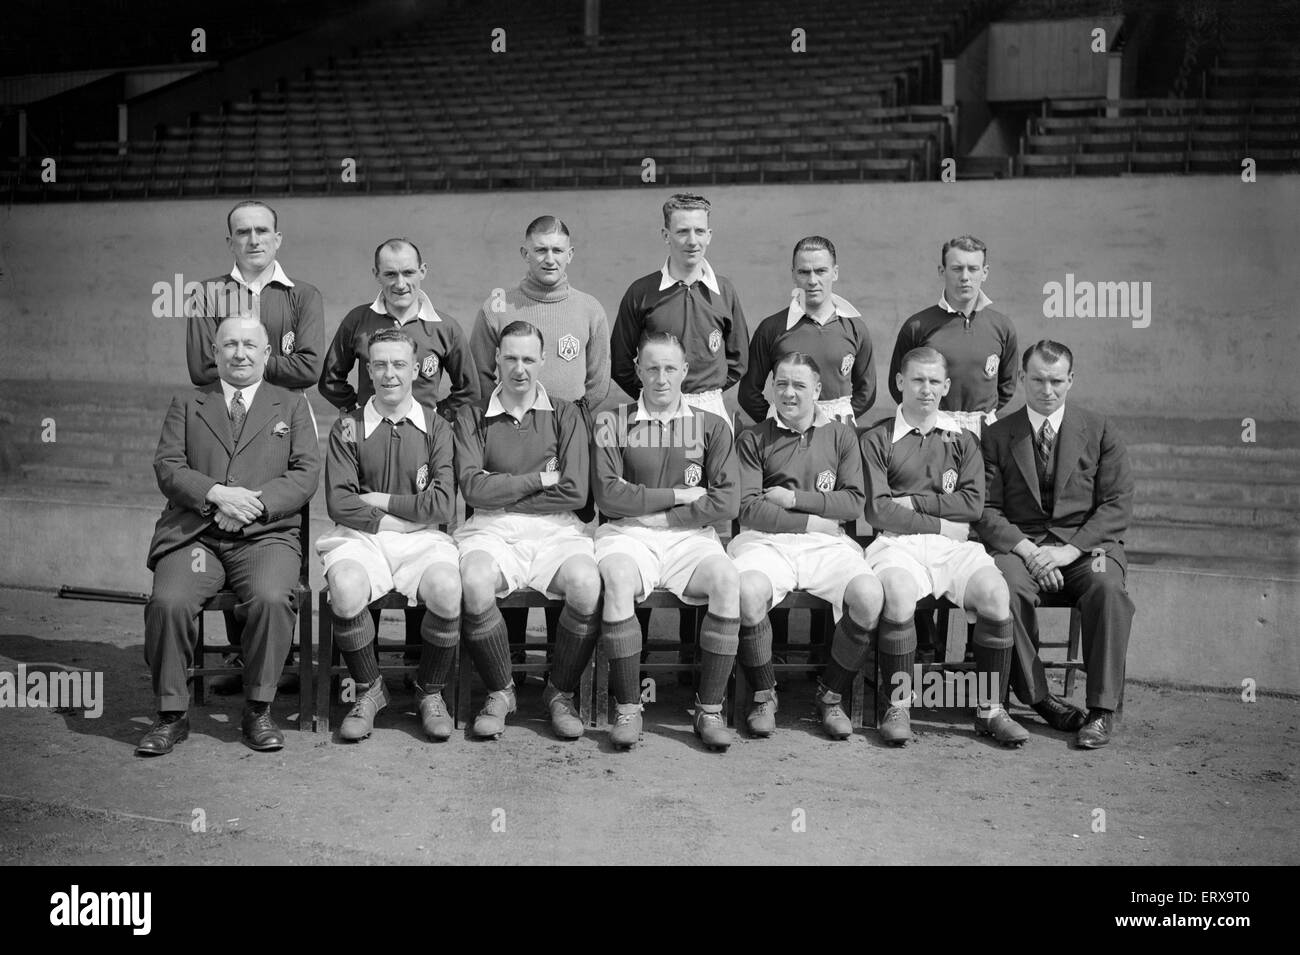 Arsenal-Fußball-Nationalmannschaft posieren für ein Gruppenfoto zusammen mit Manager Herbert Chapman (untere Reihe von links). 13. April 1932. Stockfoto